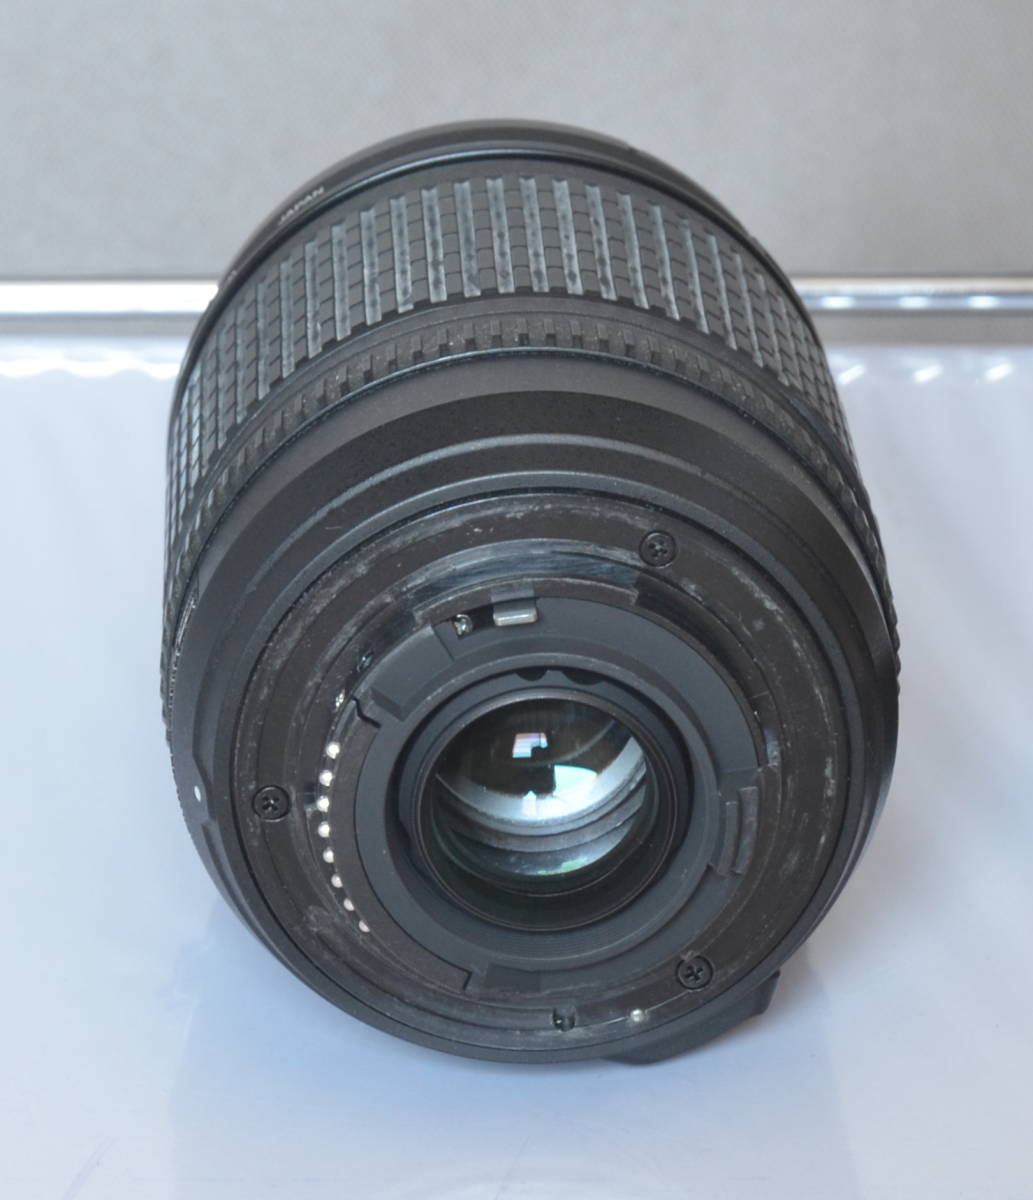 Nikon AF-S DX Zoom Nikkor ED18-135mm